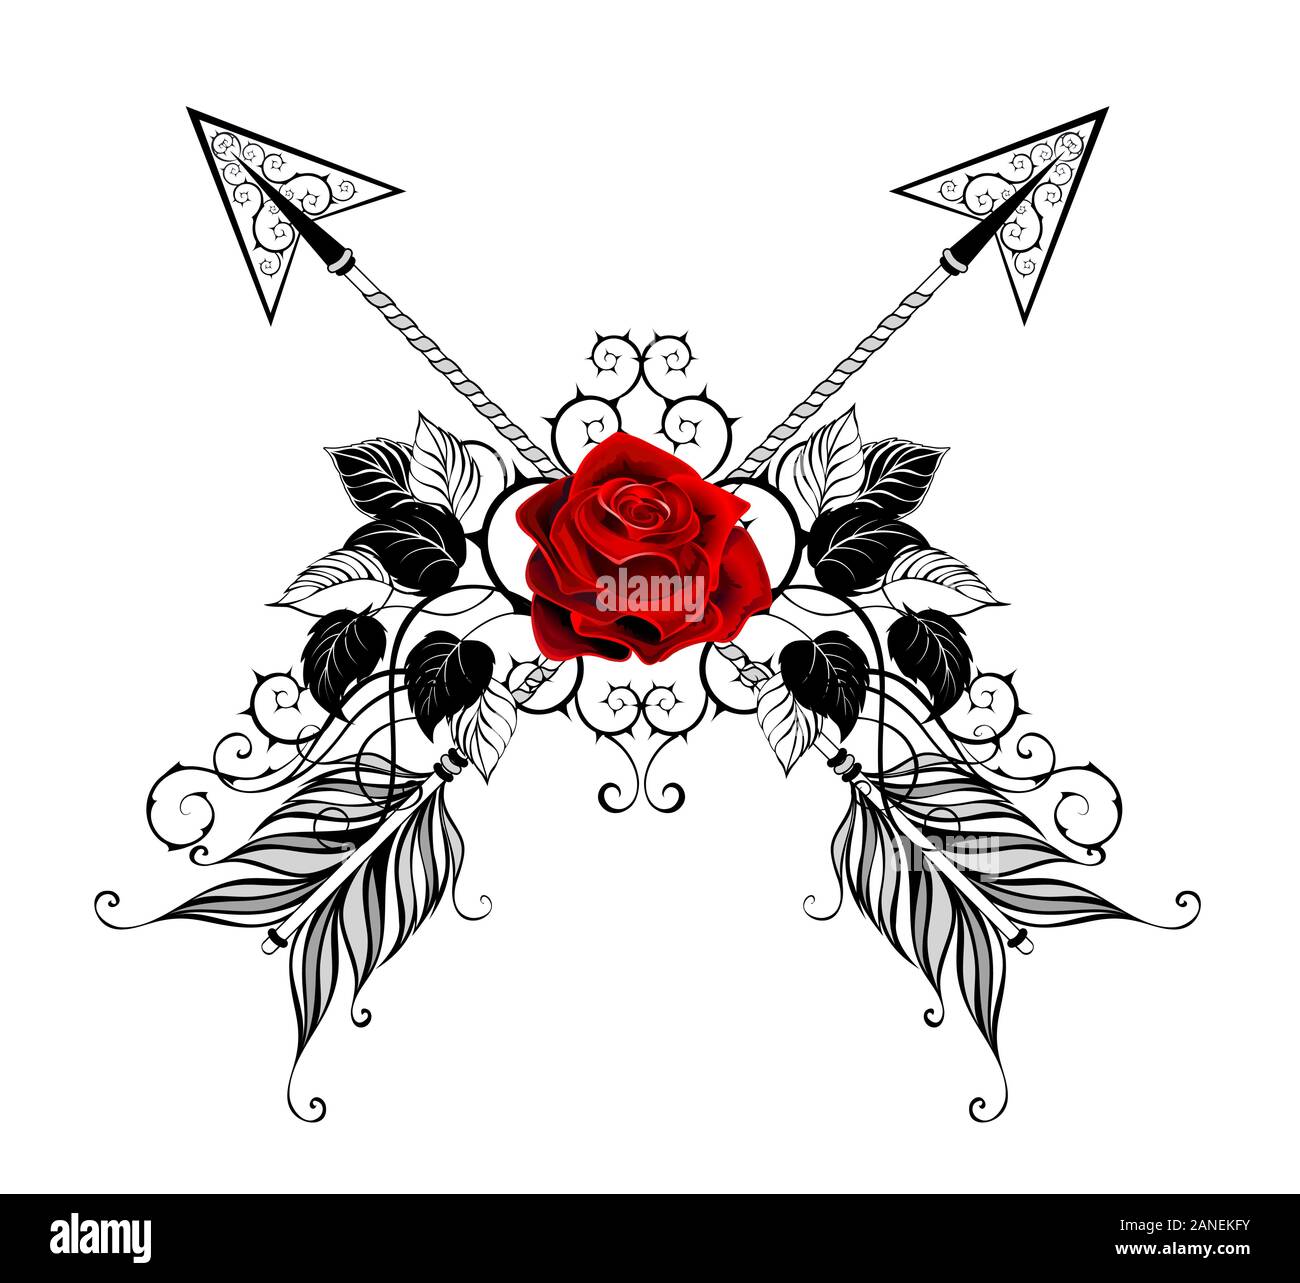 Dos flechas cruzadas, telas decoradas con rosas rojas, flor con hojas y tallos en negro sobre fondo blanco. Estilo de tatuaje Imagen Vector de stock - Alamy